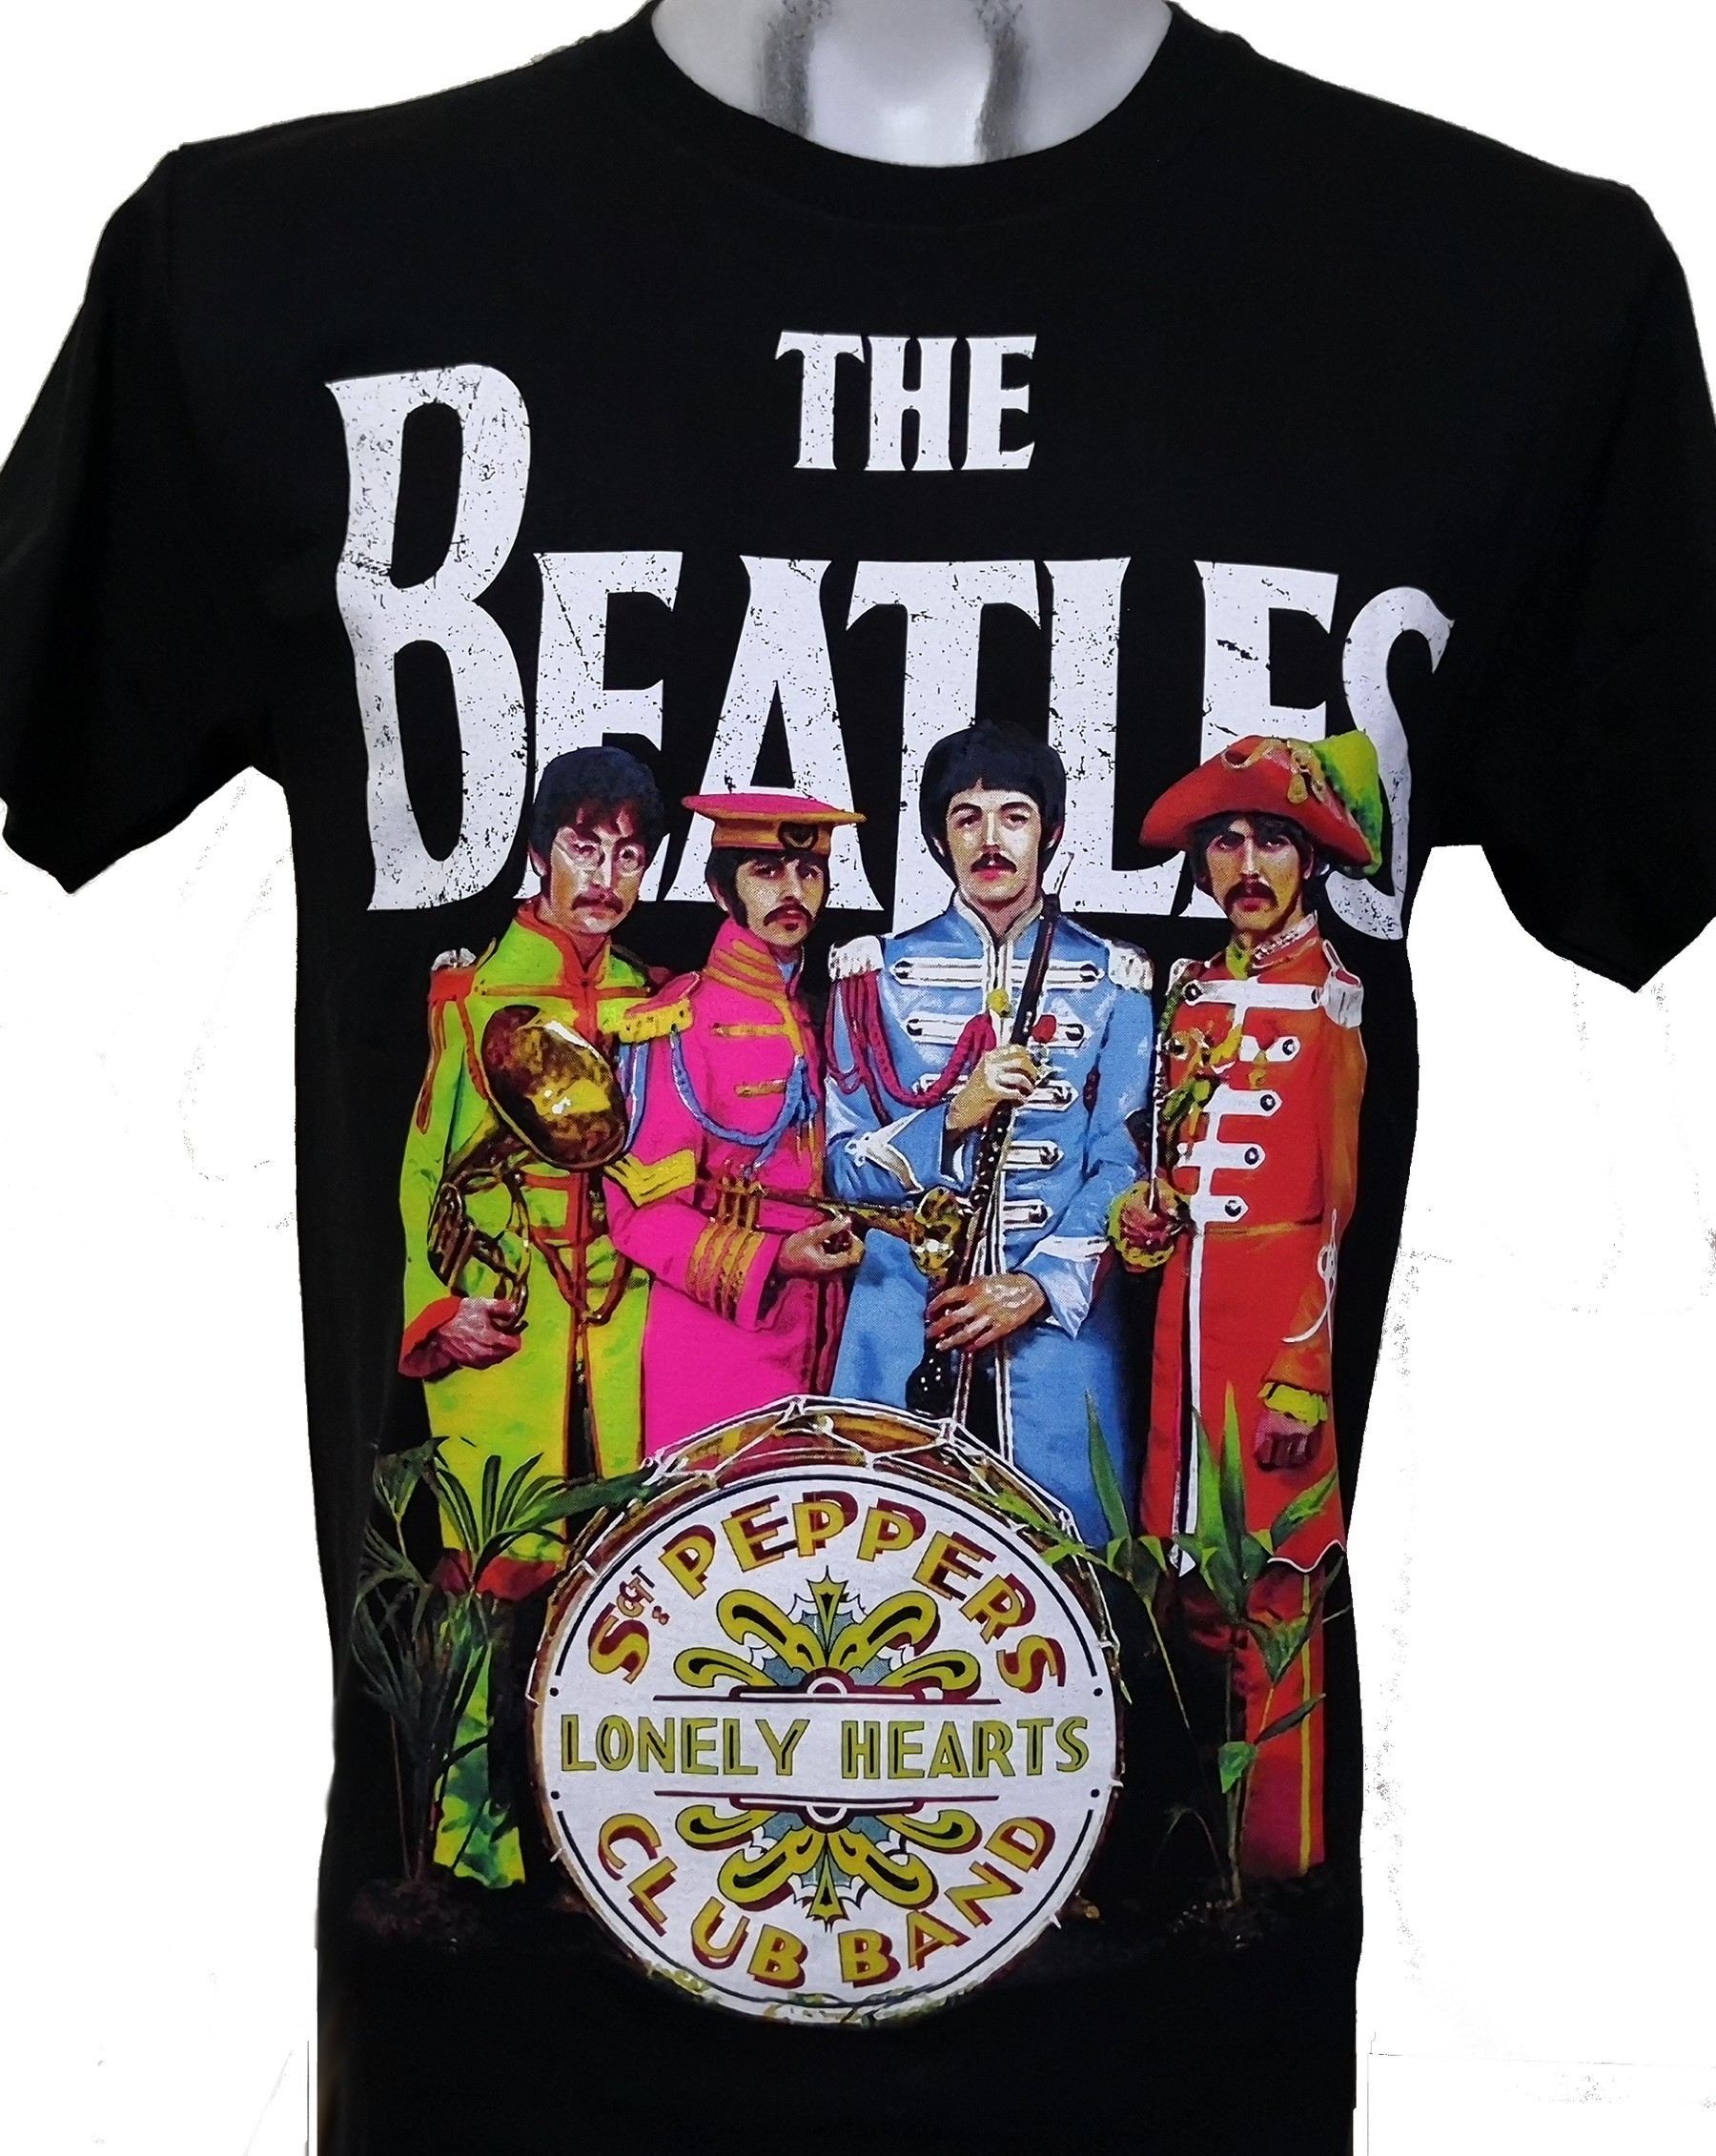 Uhøfligt Vuggeviser ryste The Beatles t-shirt size L – RoxxBKK